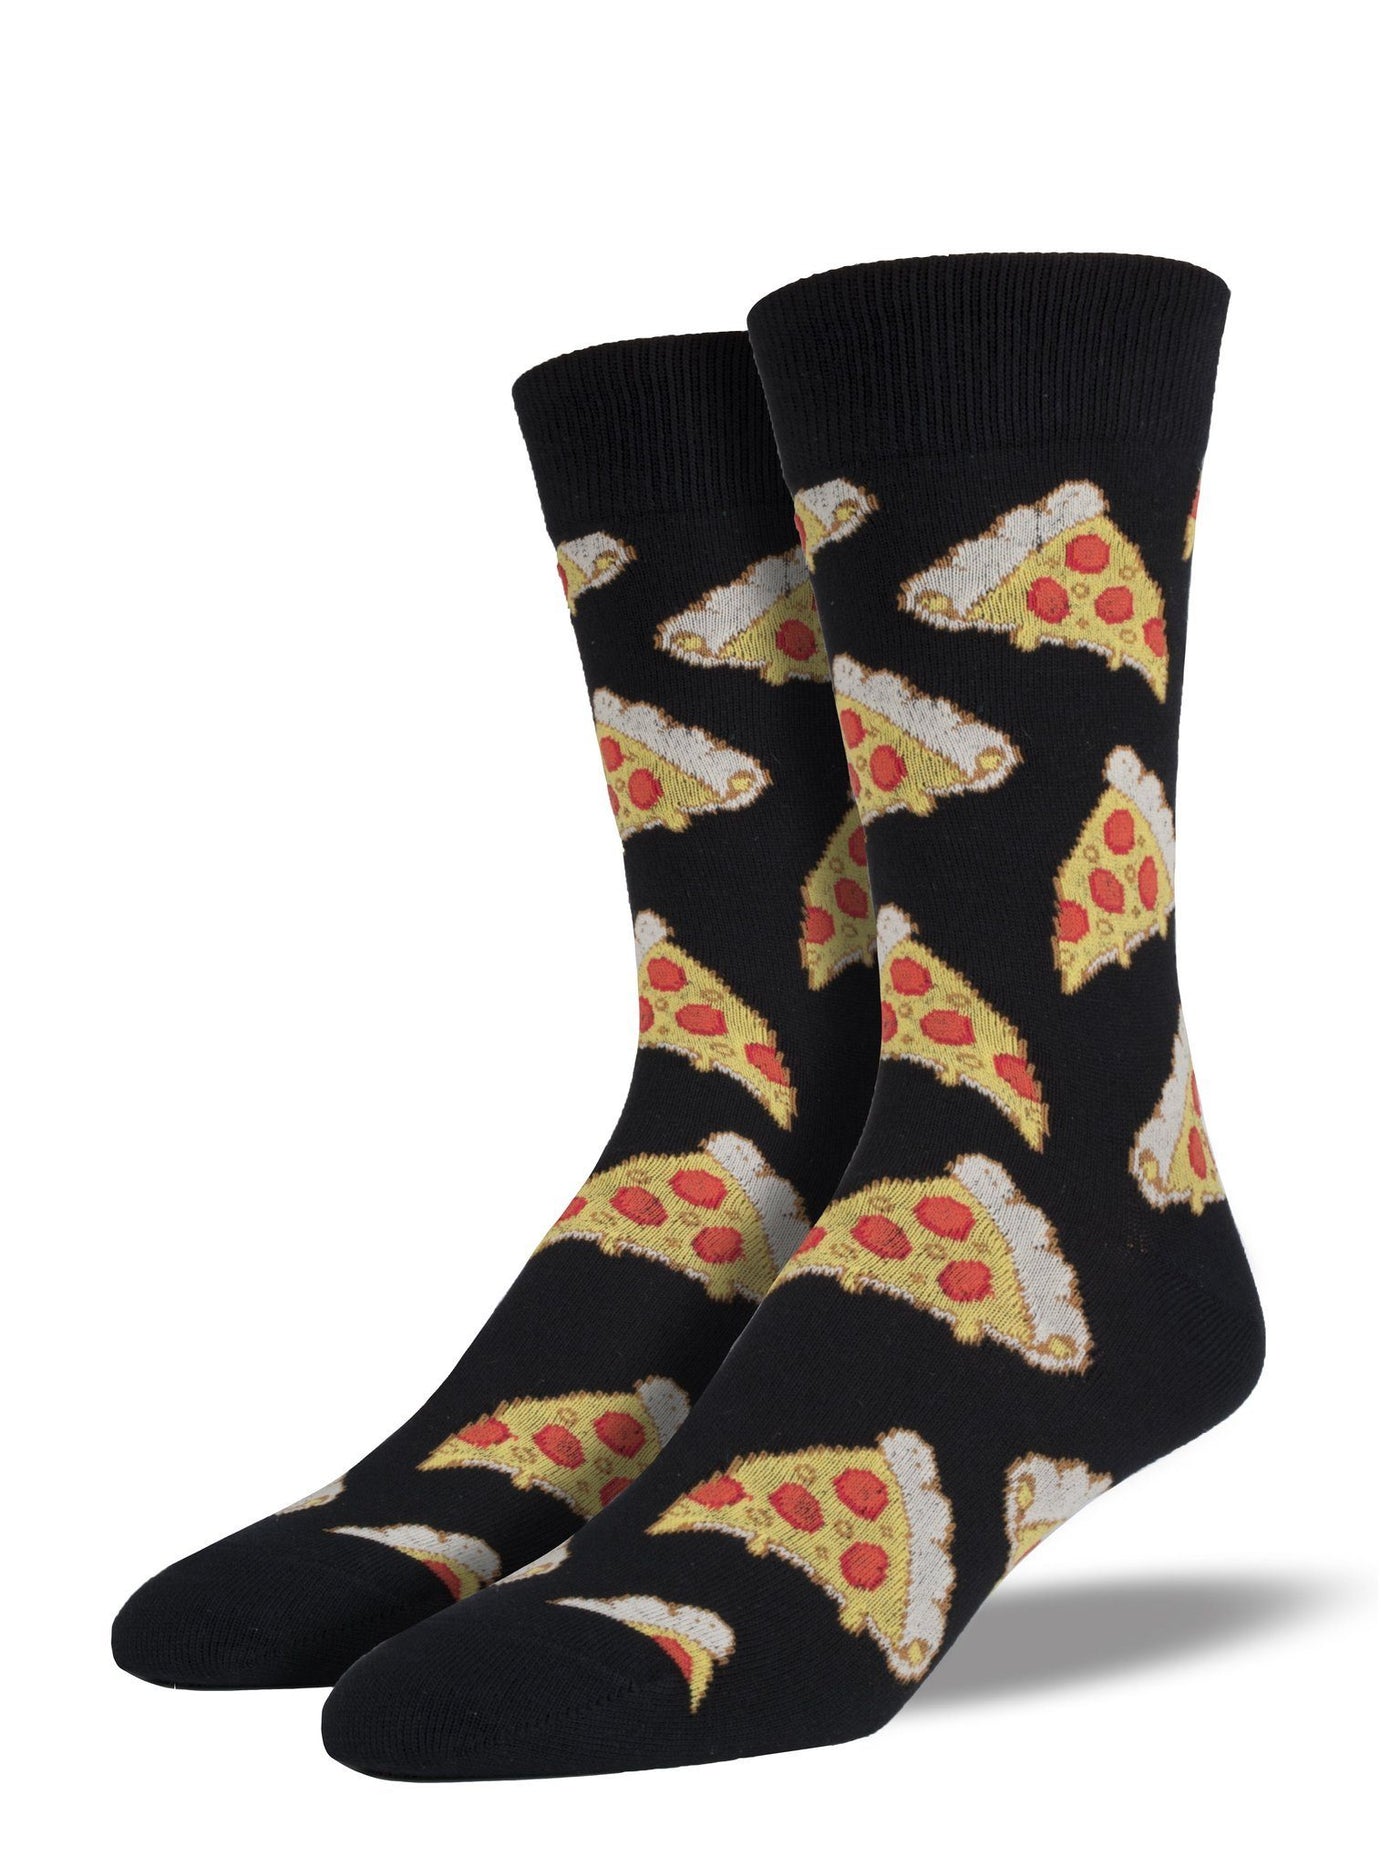 Socksmith - Pizza Crew Socks | Men's - Knock Your Socks Off